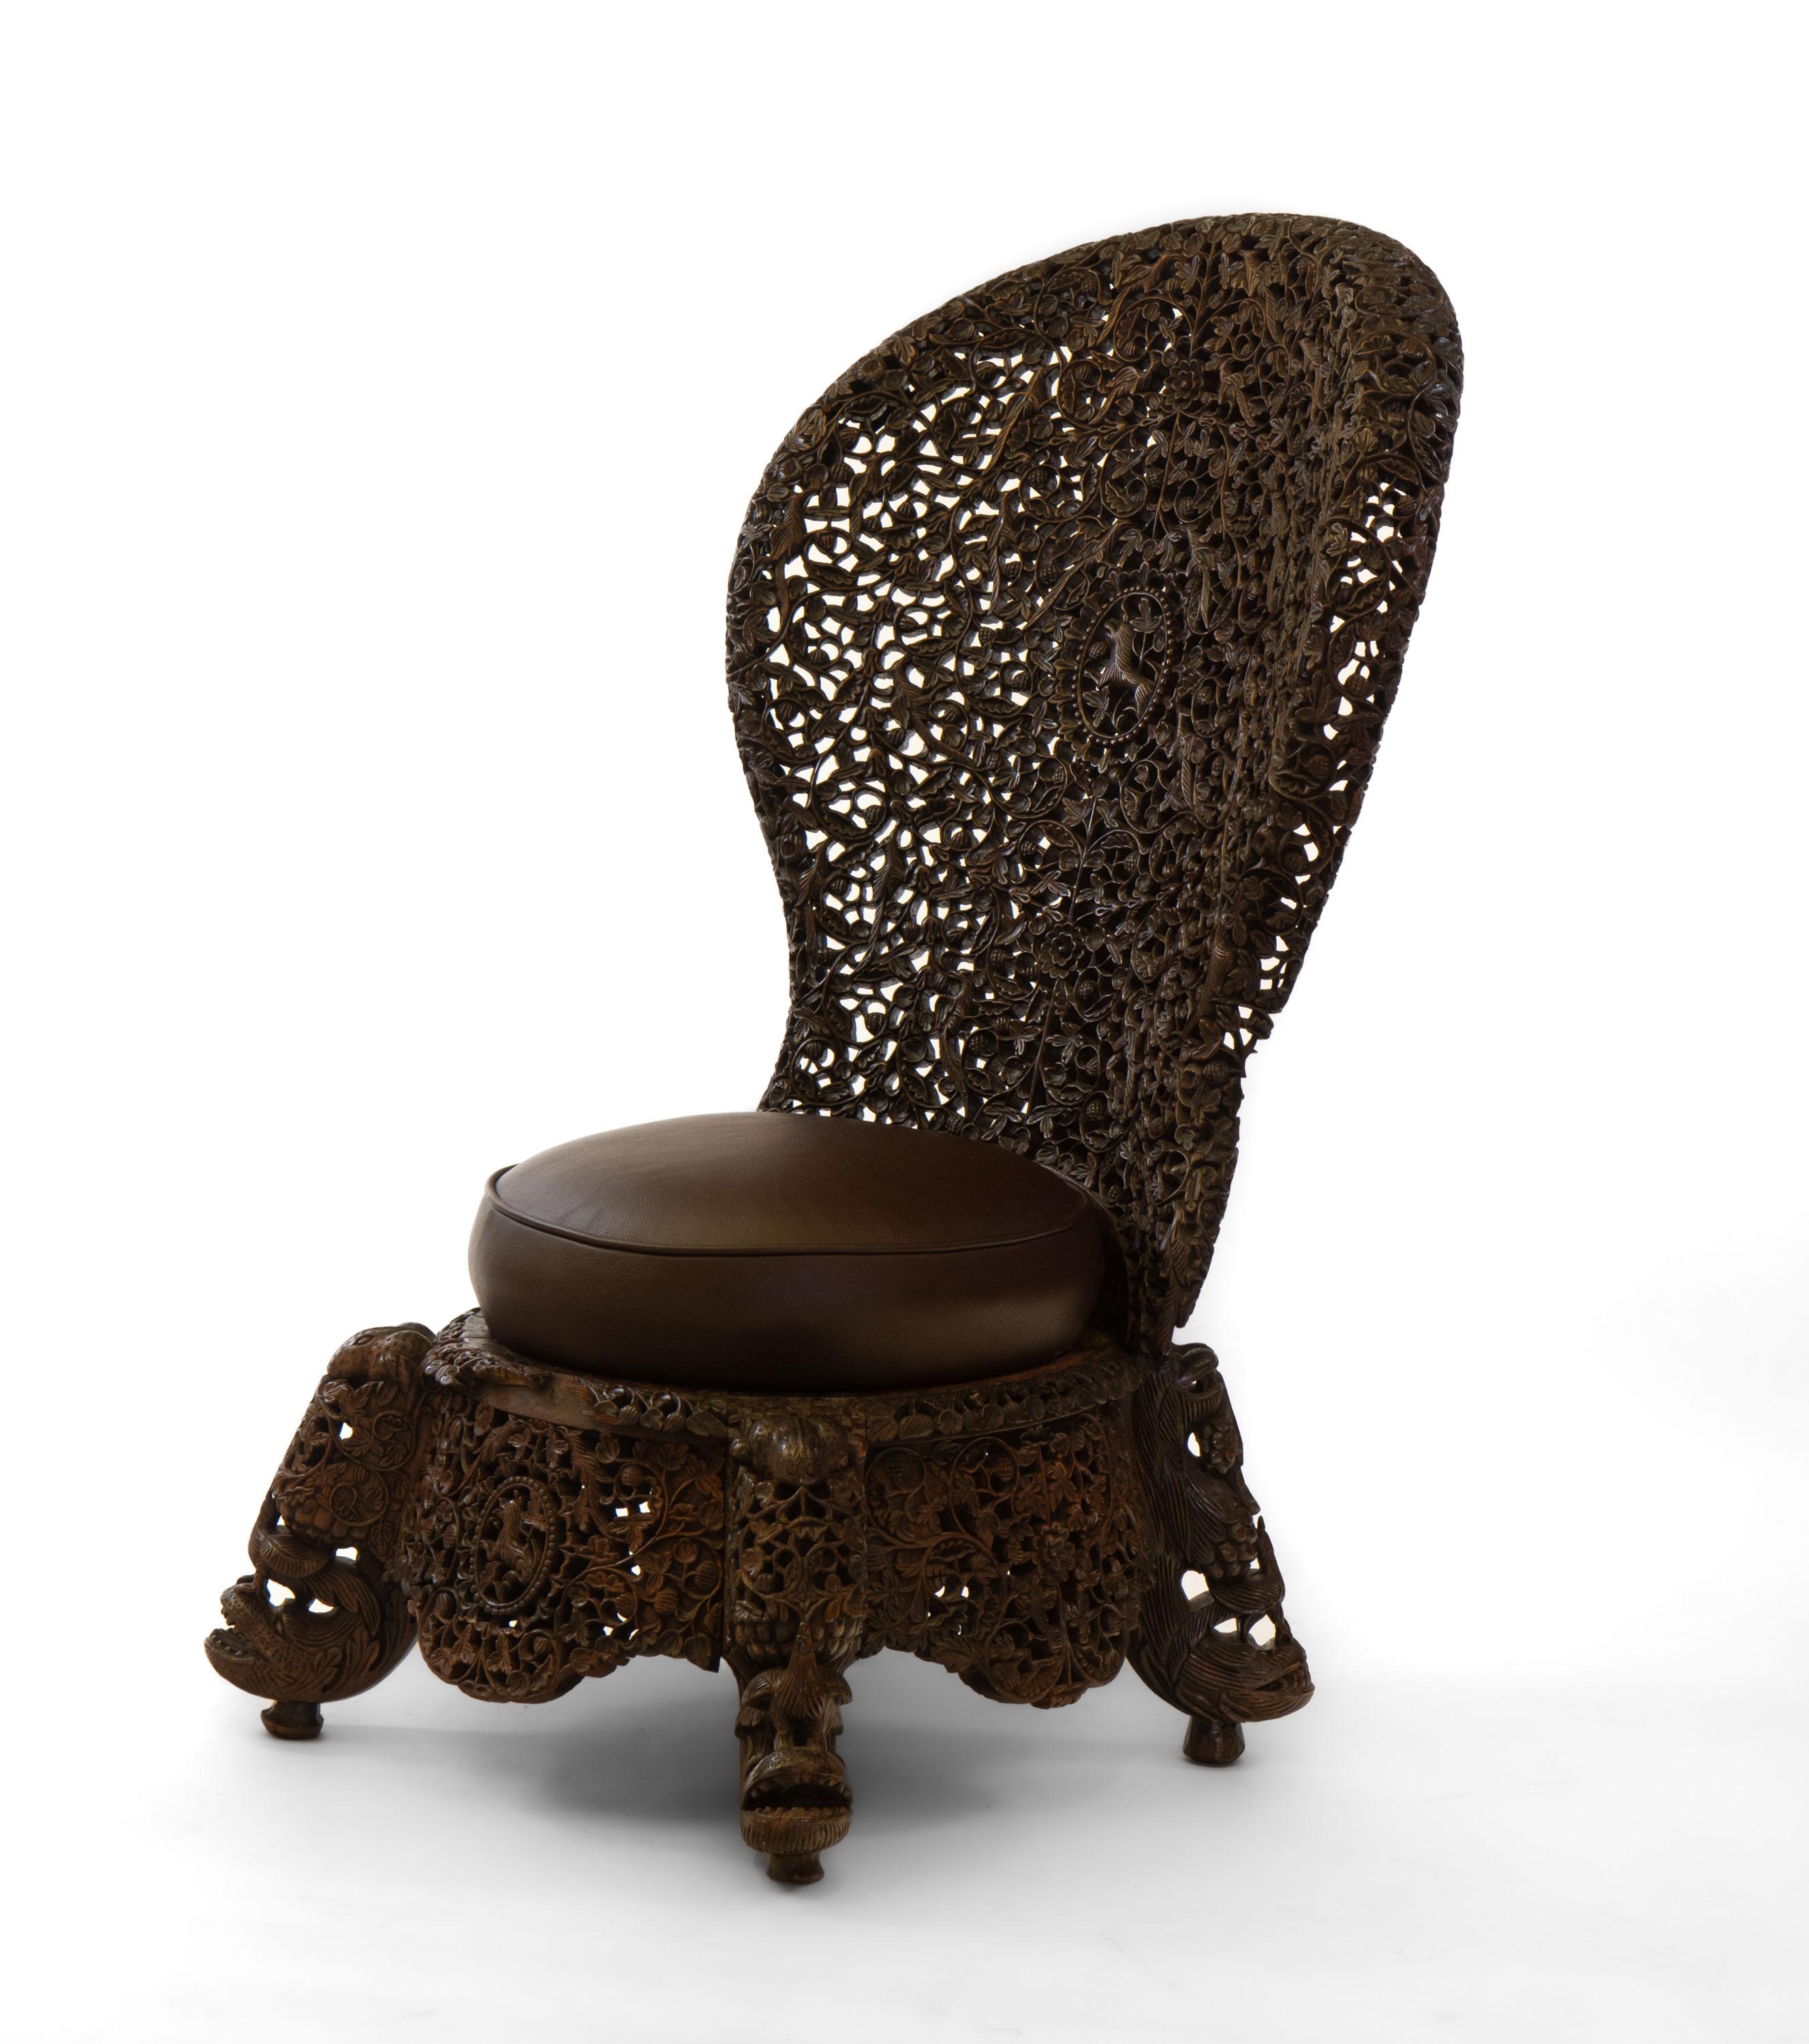 Superbe chaise à haut dossier en bois de padouk birman/anglo-indien du 19e siècle, richement sculptée à la main. Circa 1880.

Les frais de livraison sont INCLUS dans le prix pour toutes les régions de l'Angleterre continentale et du Pays de Galles.